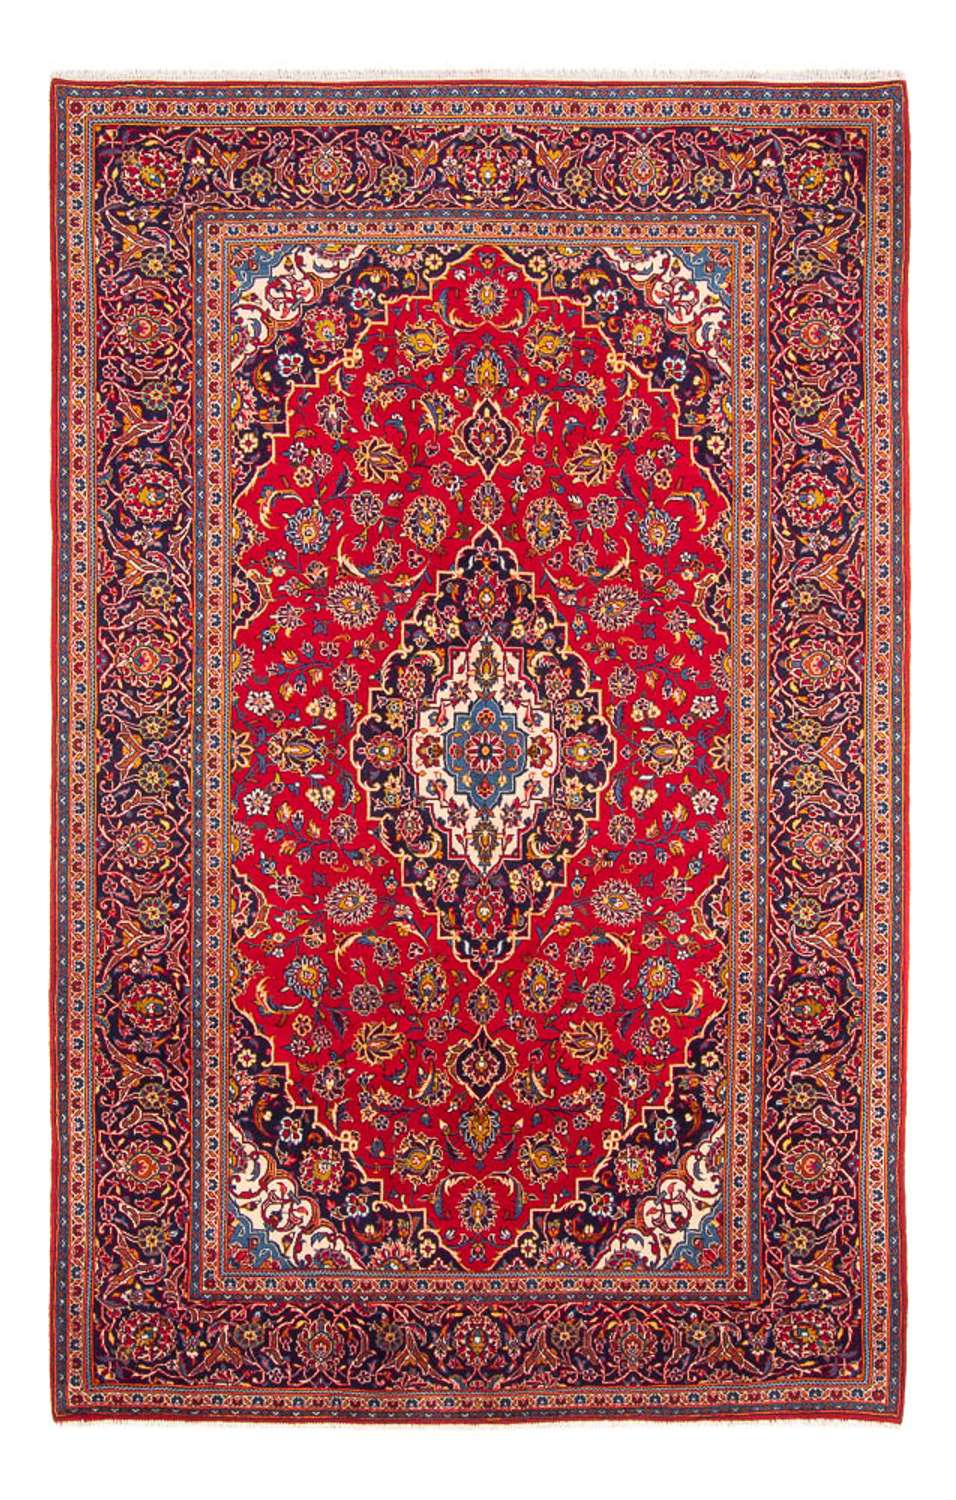 Perský koberec - Keshan - 294 x 194 cm - červená